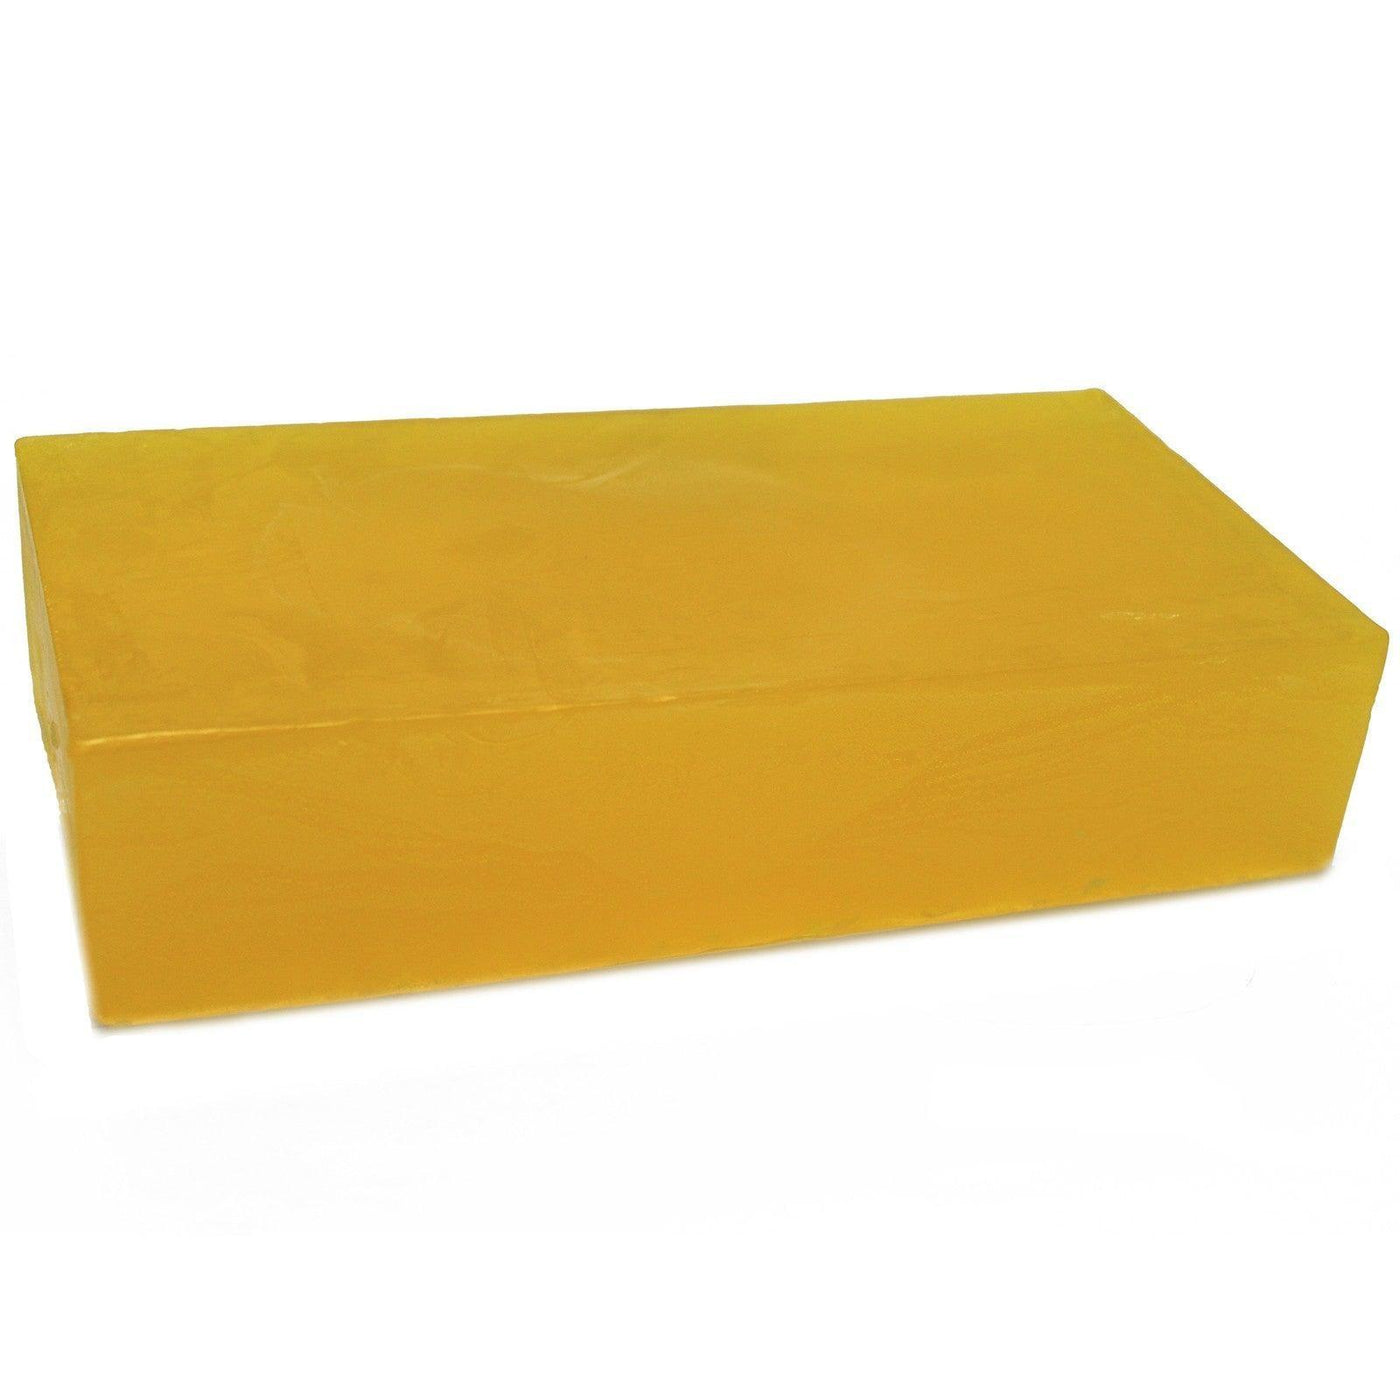 Lemon Essential Oil Soap Loaf And Slices - 100Gr - 2kg.